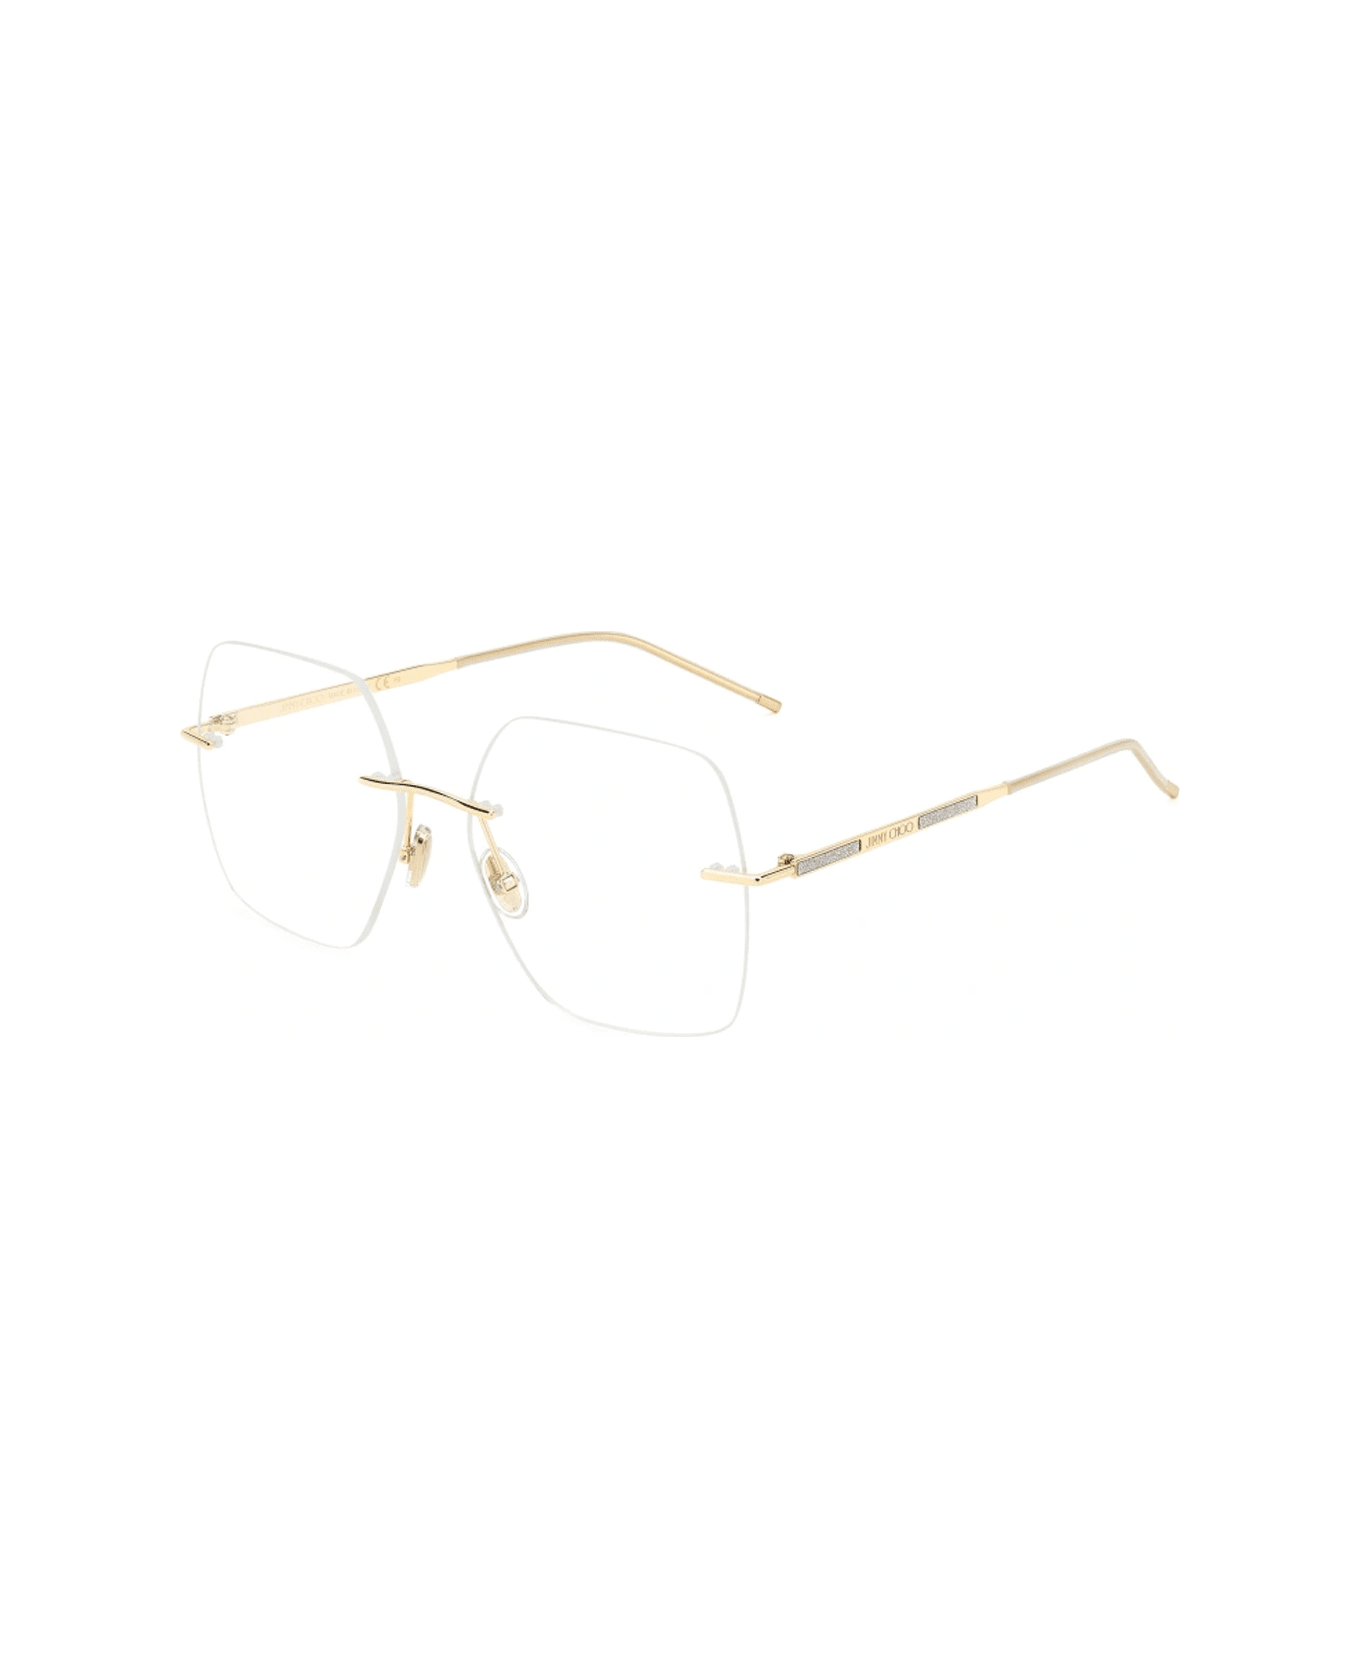 Textiles & Linens Jc364/g 83i/17 Glasses - Oro